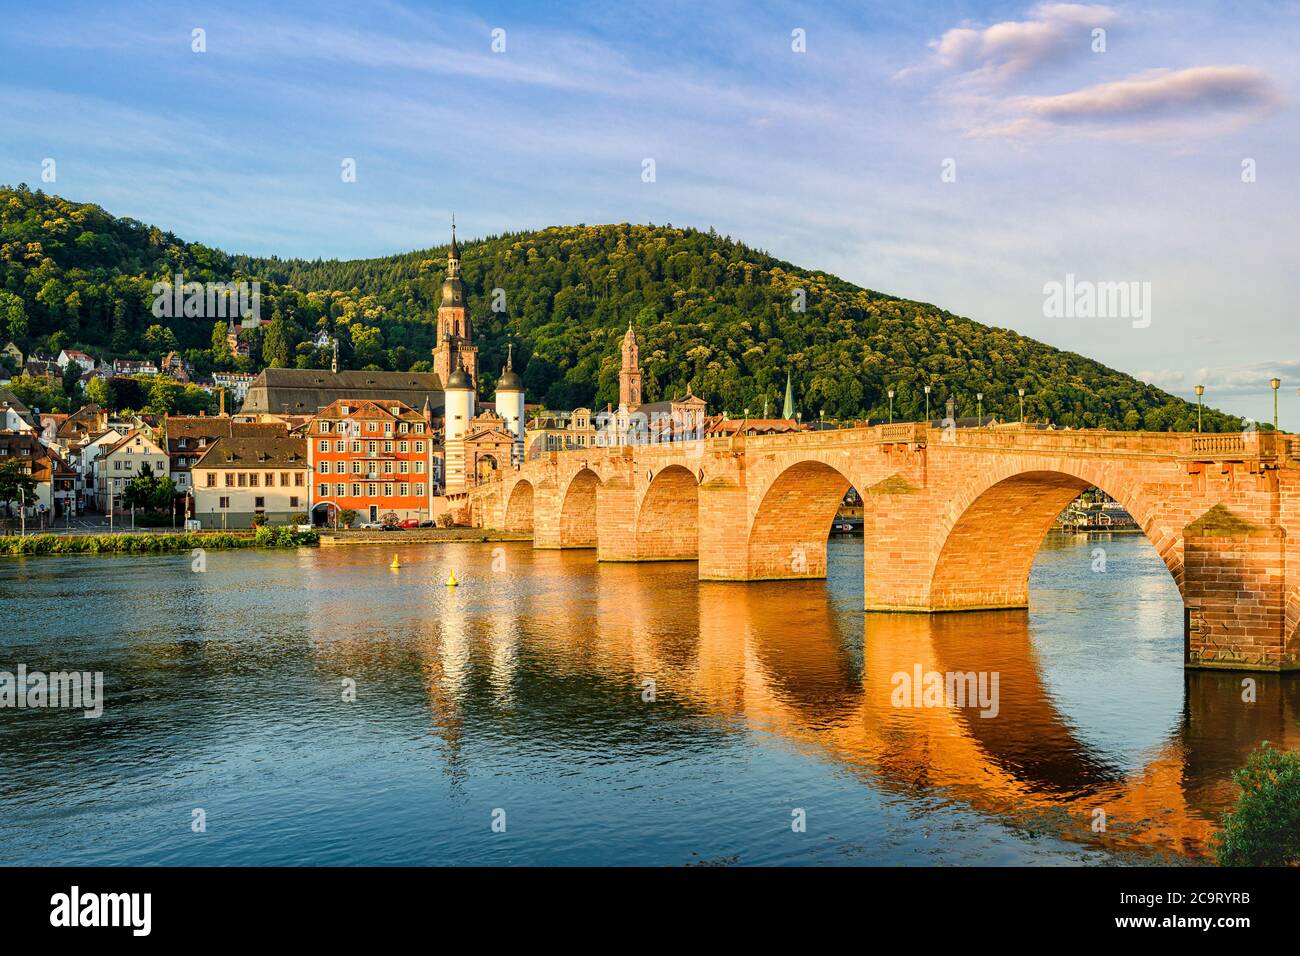 Le vieux pont sur le fleuve Neckar à Heidelberg, en Allemagne Banque D'Images